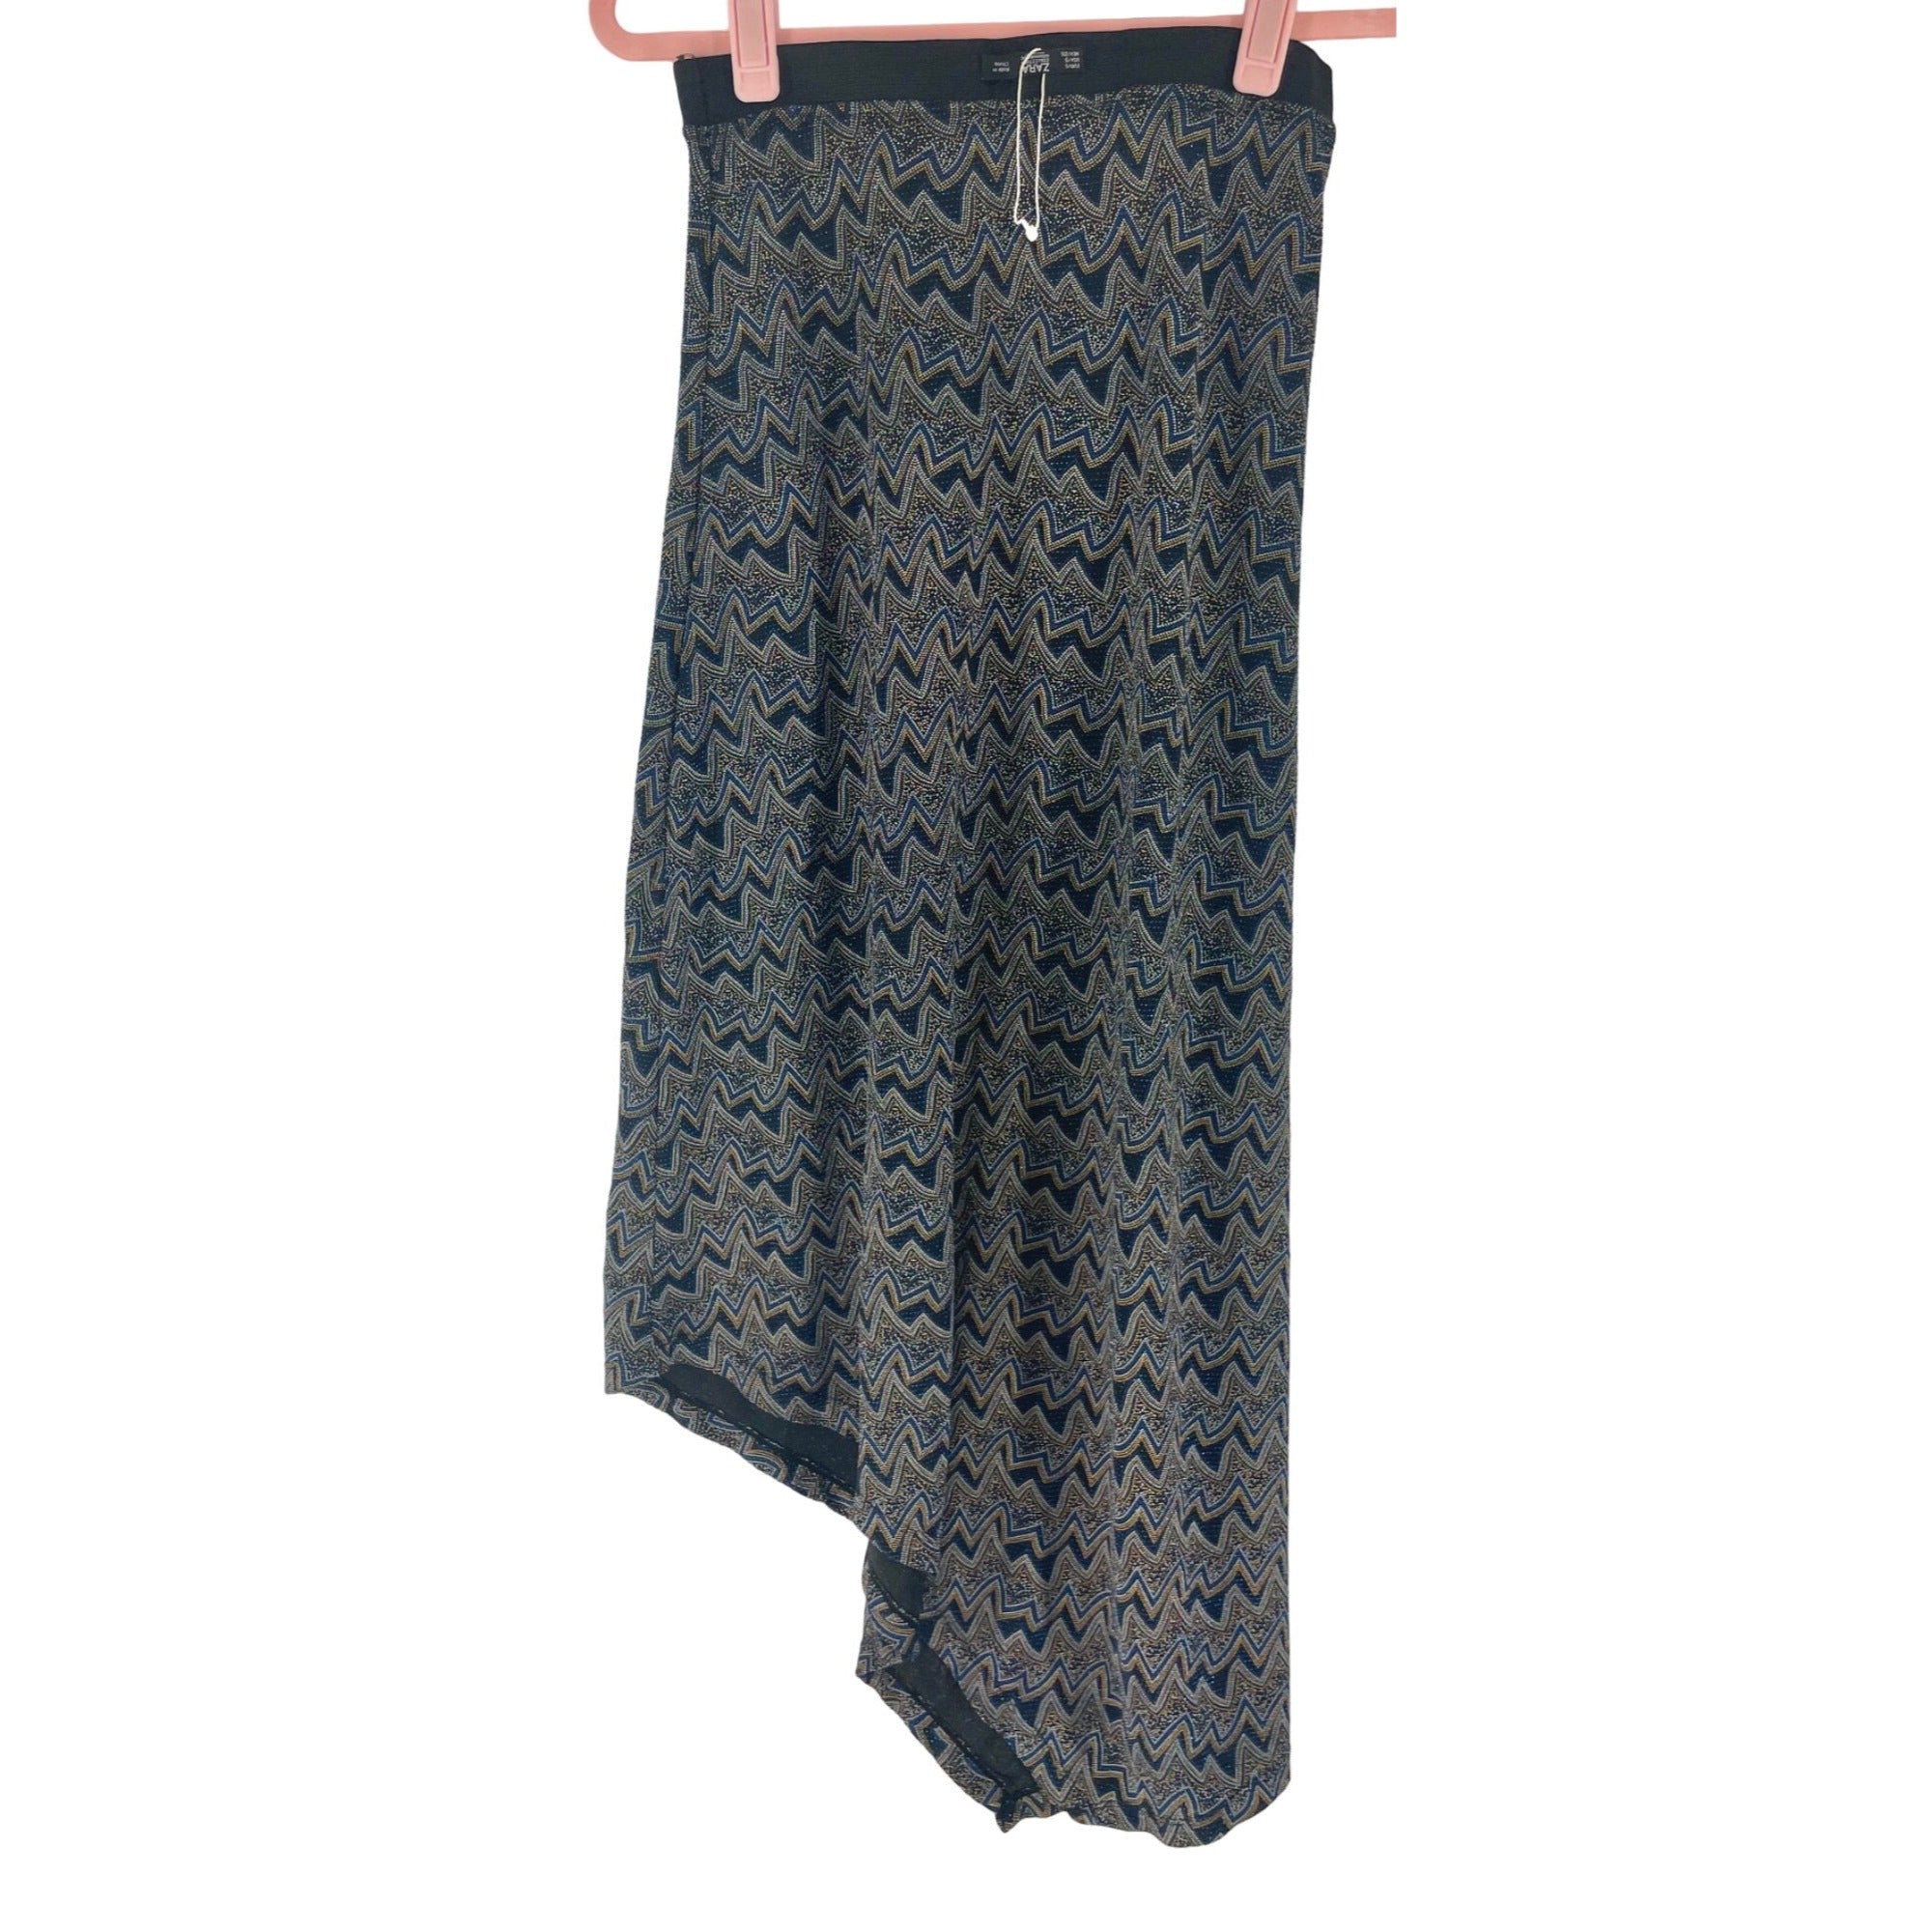 NWOT Zara Women’s Size Small Blue, Black & Orange Long Sparkly Skirt